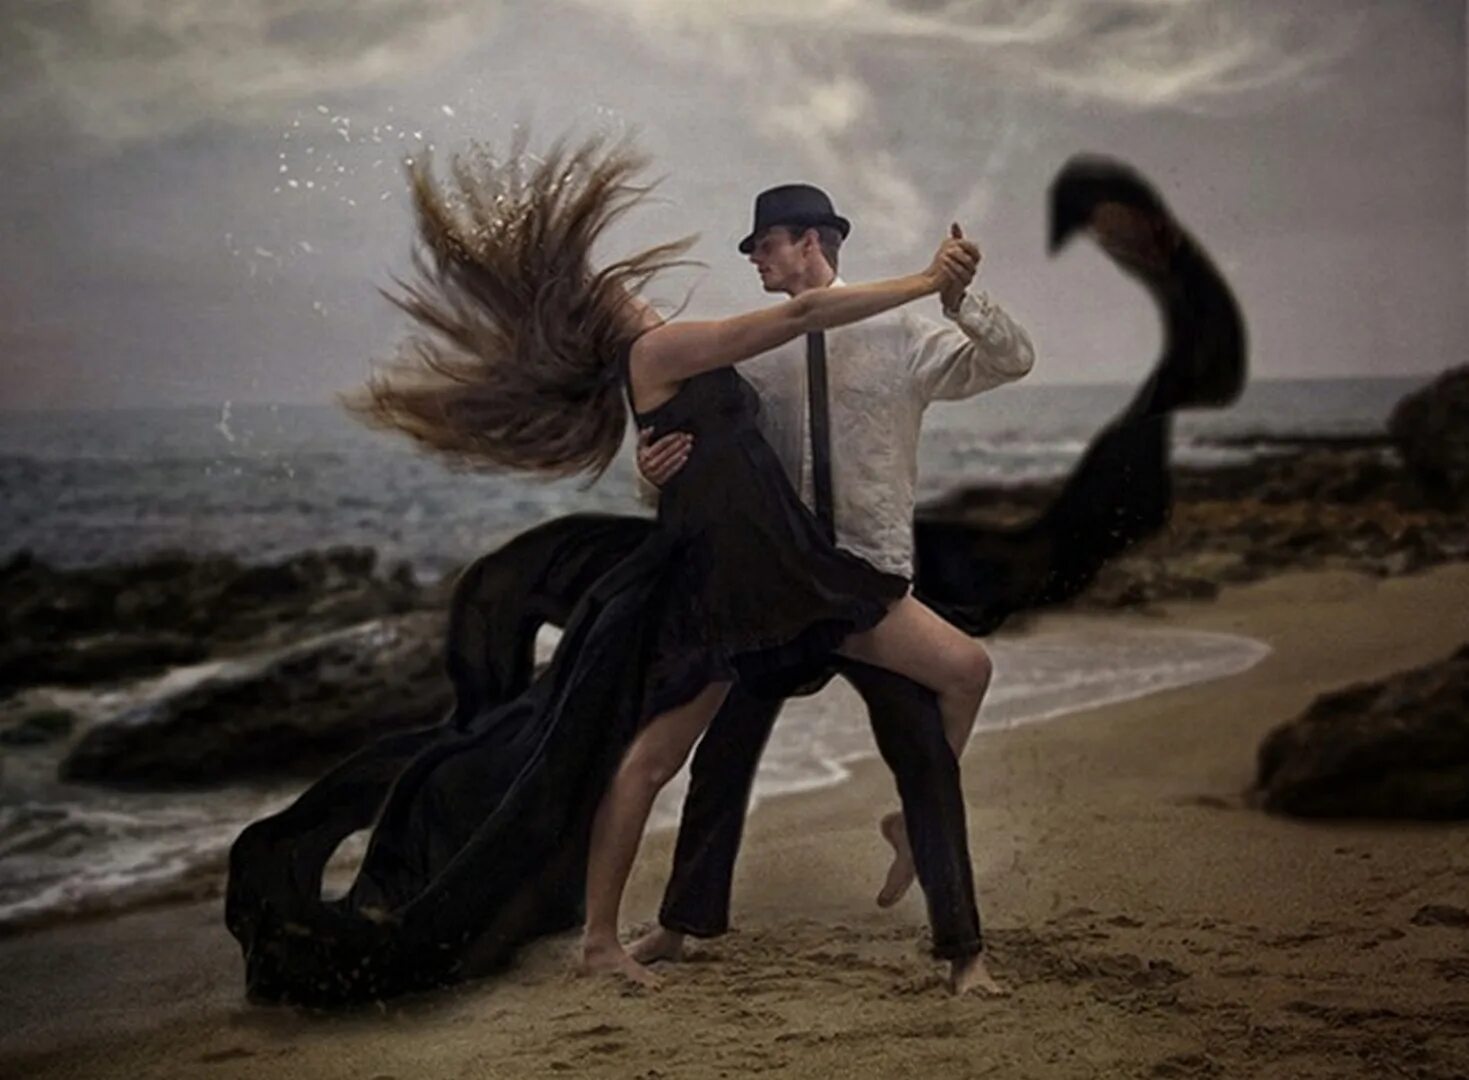 Потанцуем под песню. Танец мужчины и женщины. Танцы для влюбленных. Влюбленные в танце. Двое танцуют.